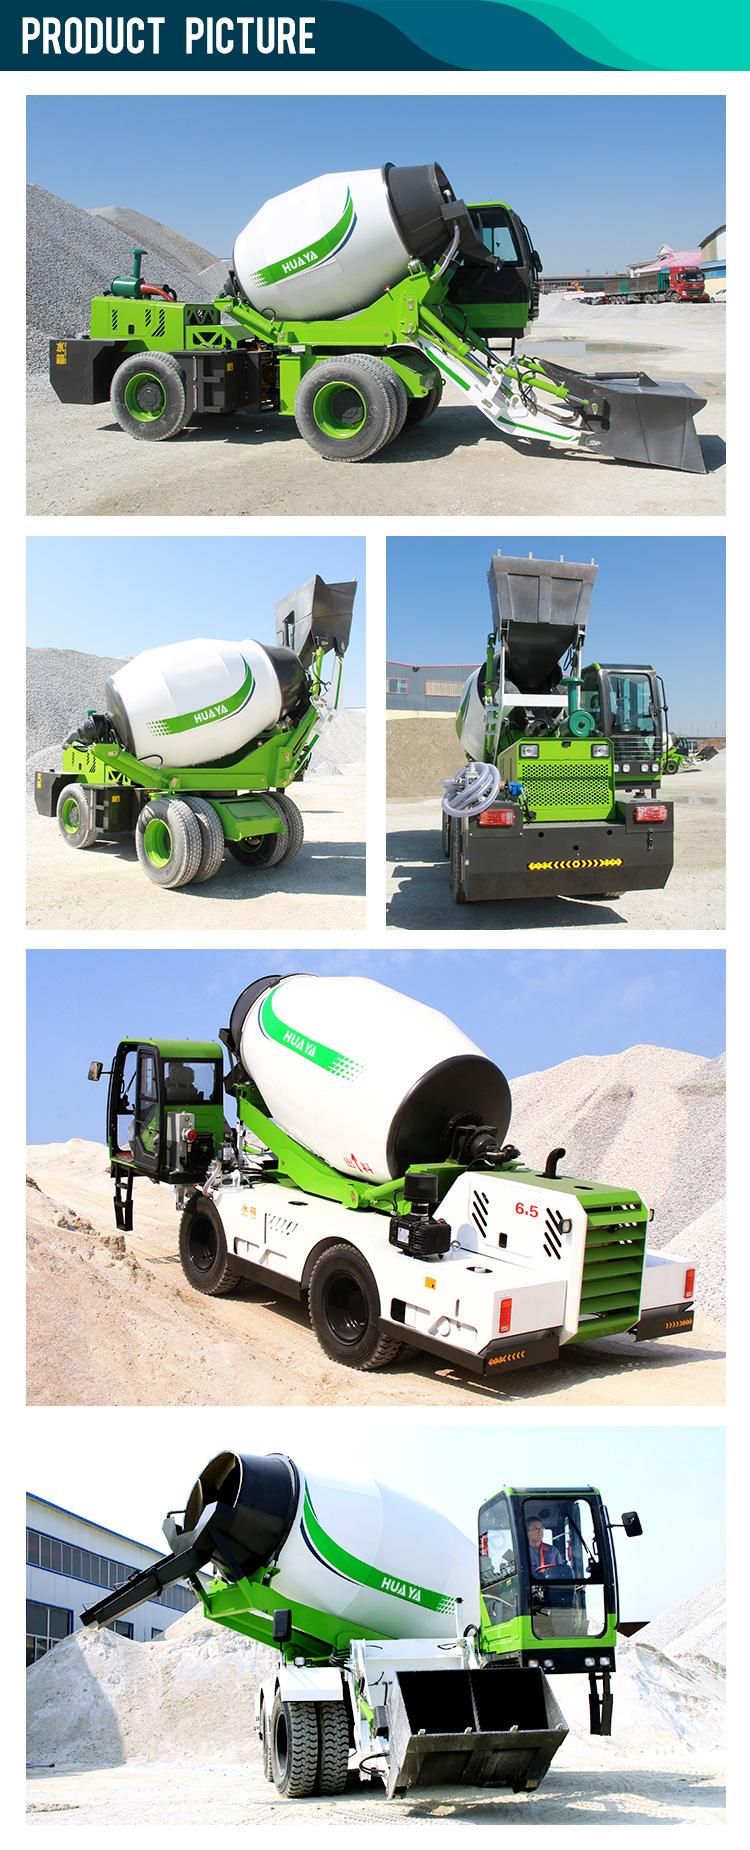 China New Huaya Cement Machinery Multi Terrain Concrete Mixer Truck